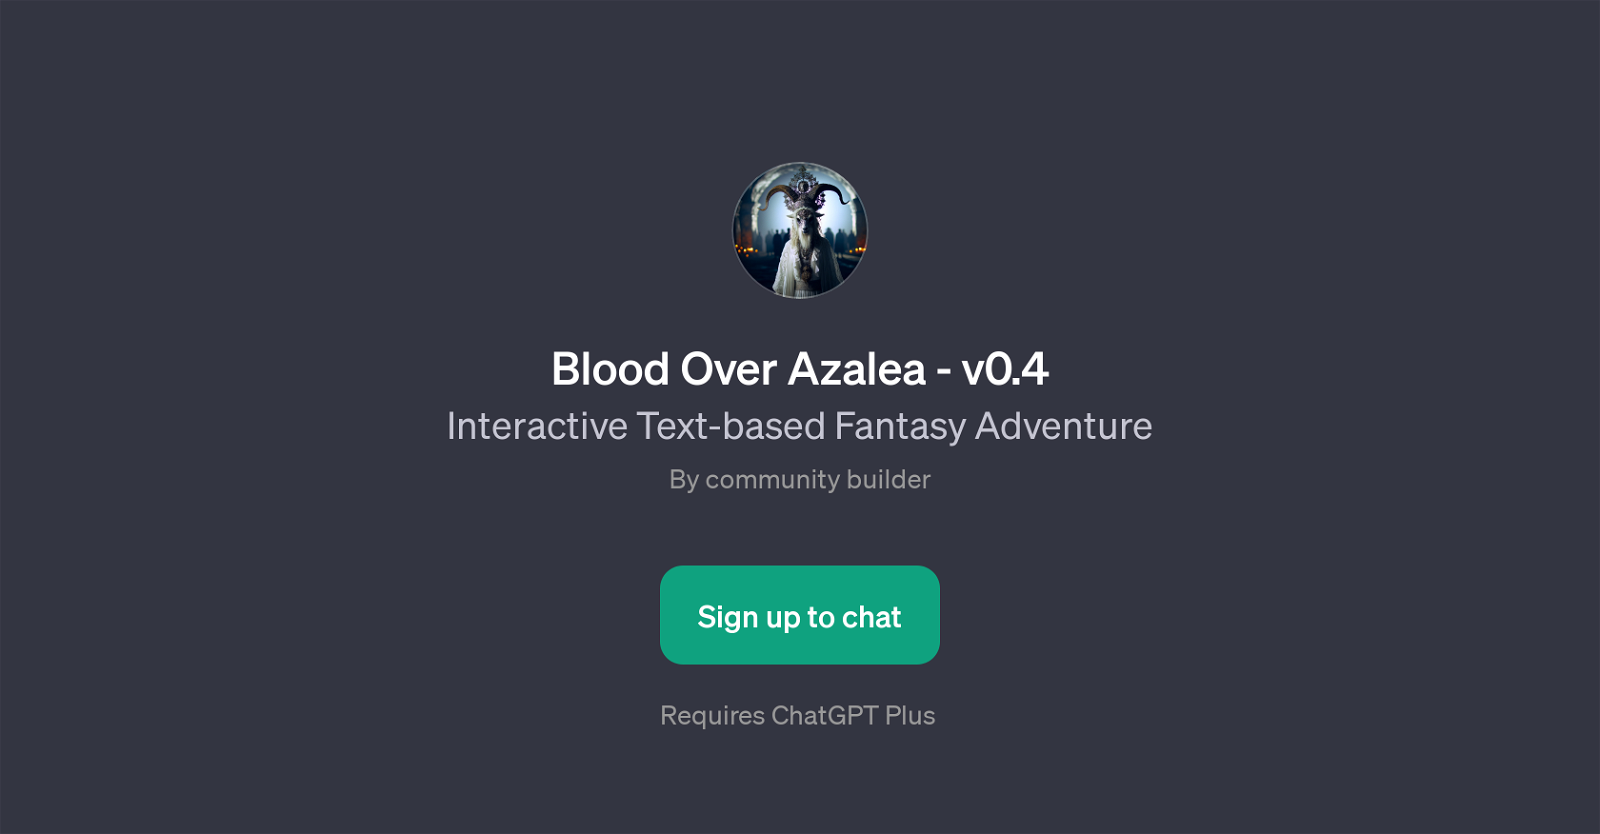 Blood Over Azalea - v0.4 website